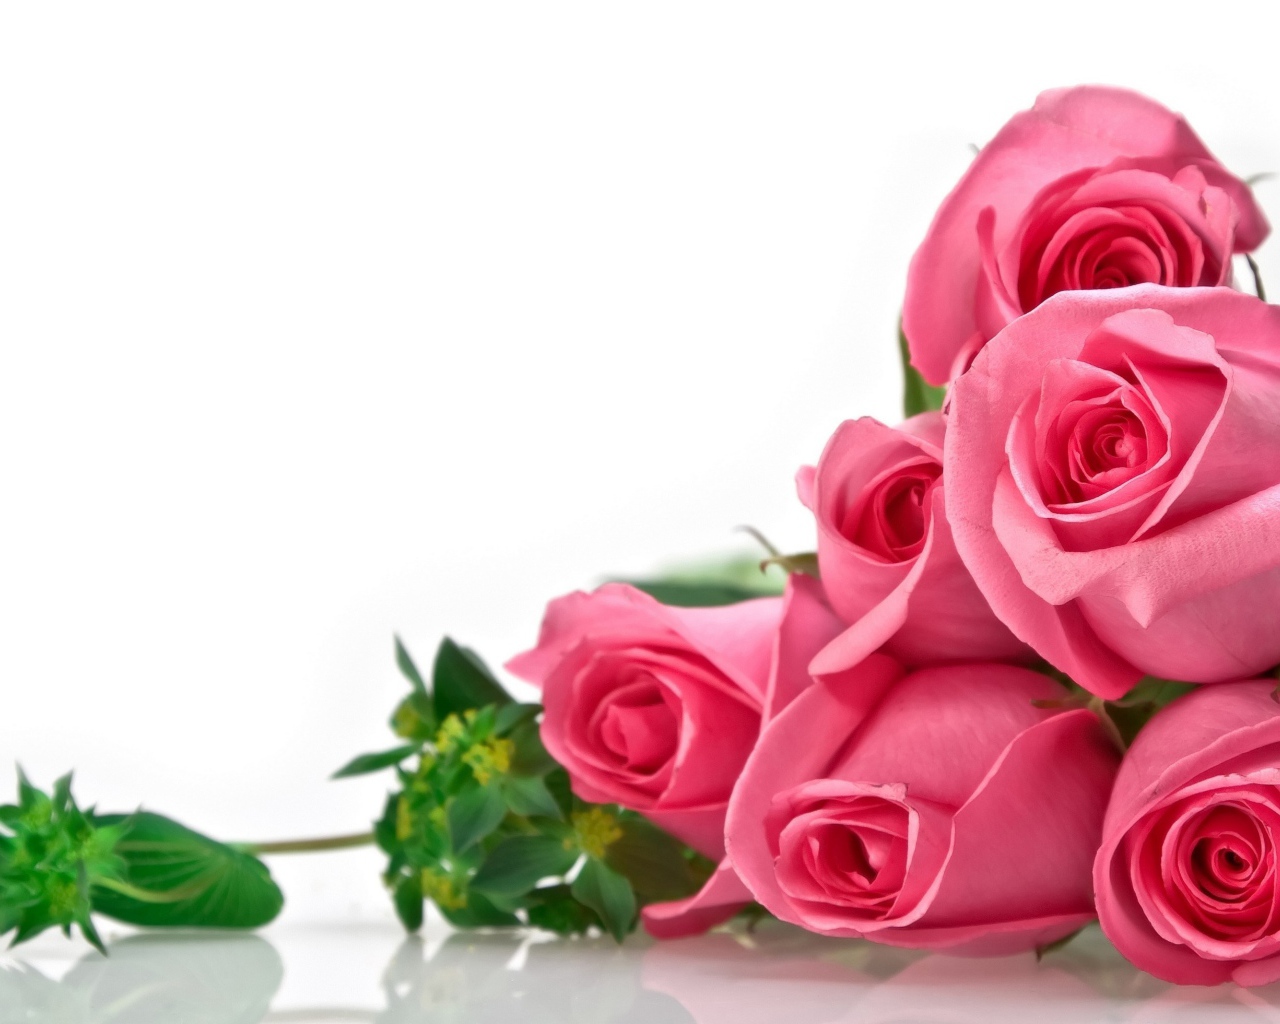 Розы на белом фоне, фон для поздравительной открытки